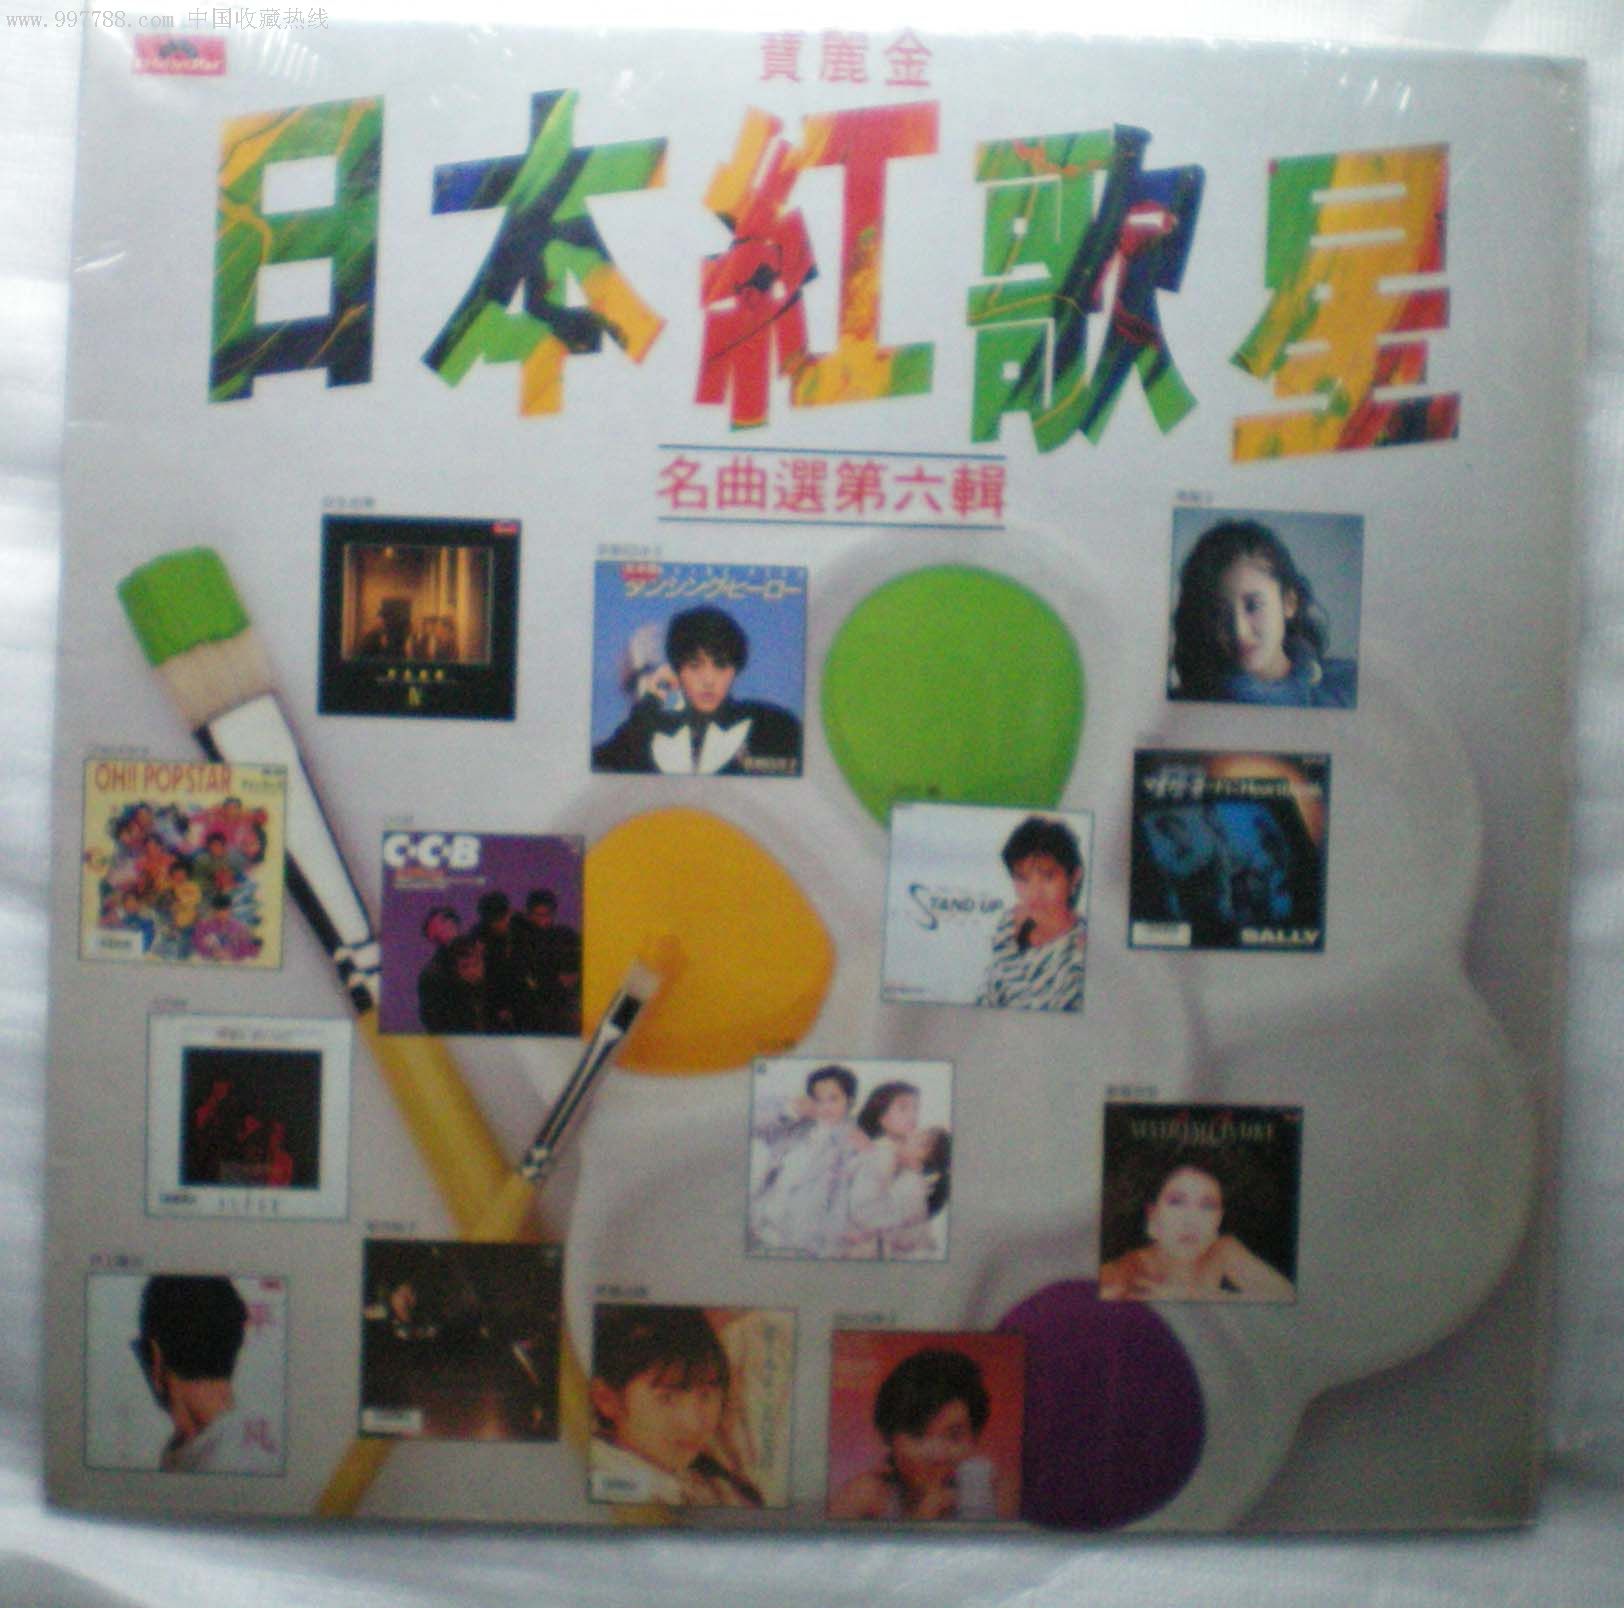 辑/日本红歌星,老唱片/胶片,胶木粗纹唱片,八十年代(20世纪),流行歌曲